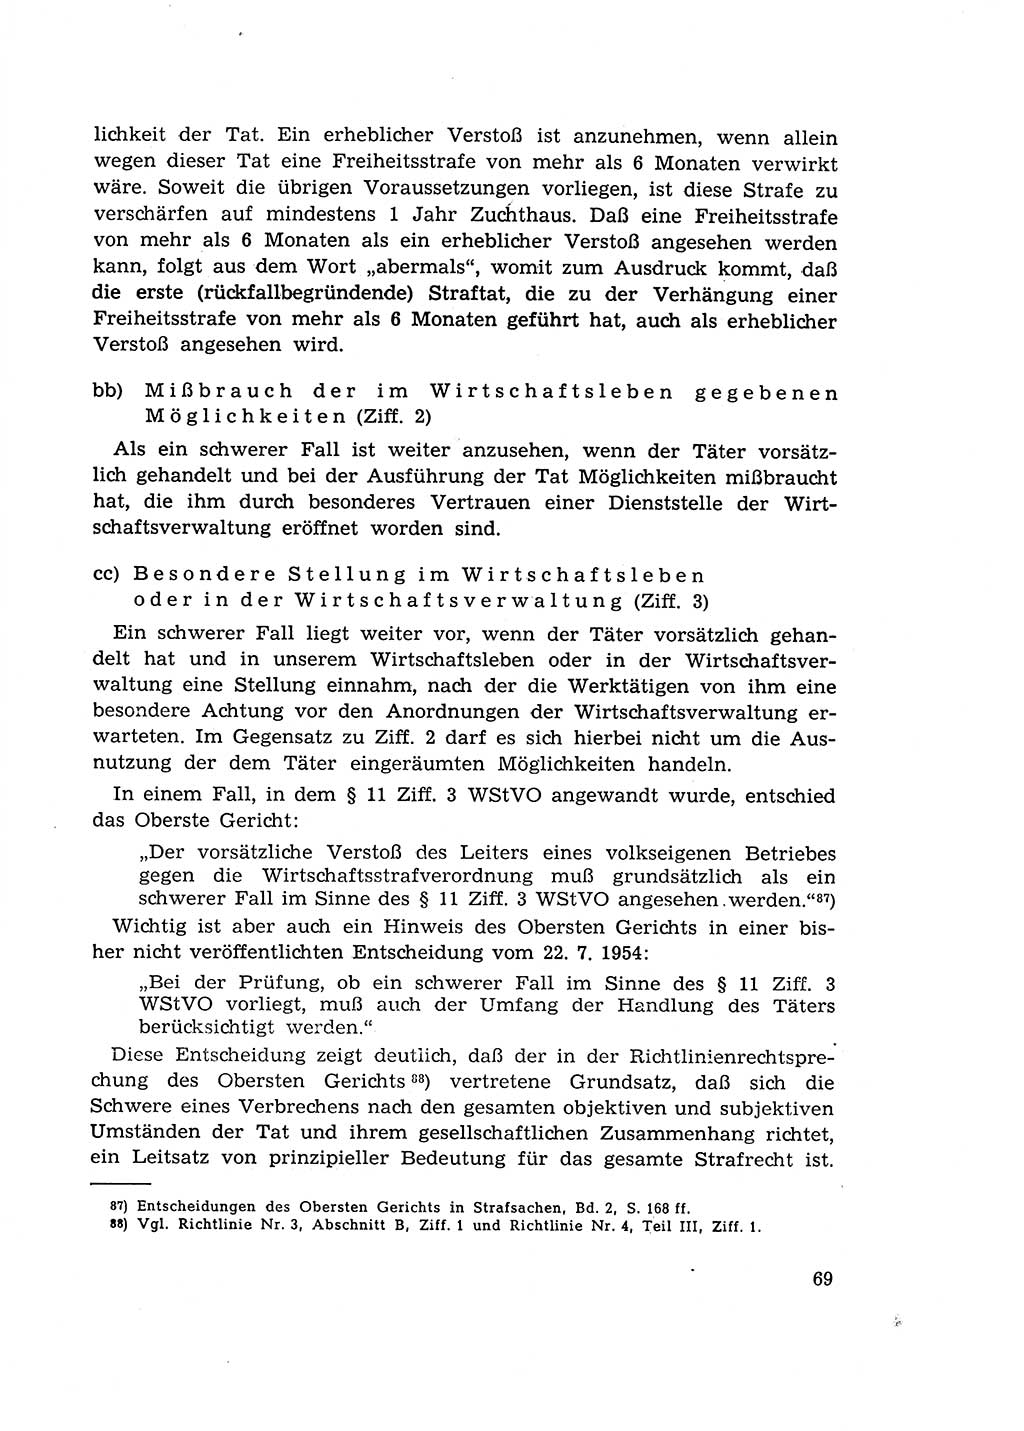 Materialien zum Strafrecht, Besonderer Teil [Deutsche Demokratische Republik (DDR)] 1955, Seite 69 (Mat. Strafr. BT DDR 1955, S. 69)